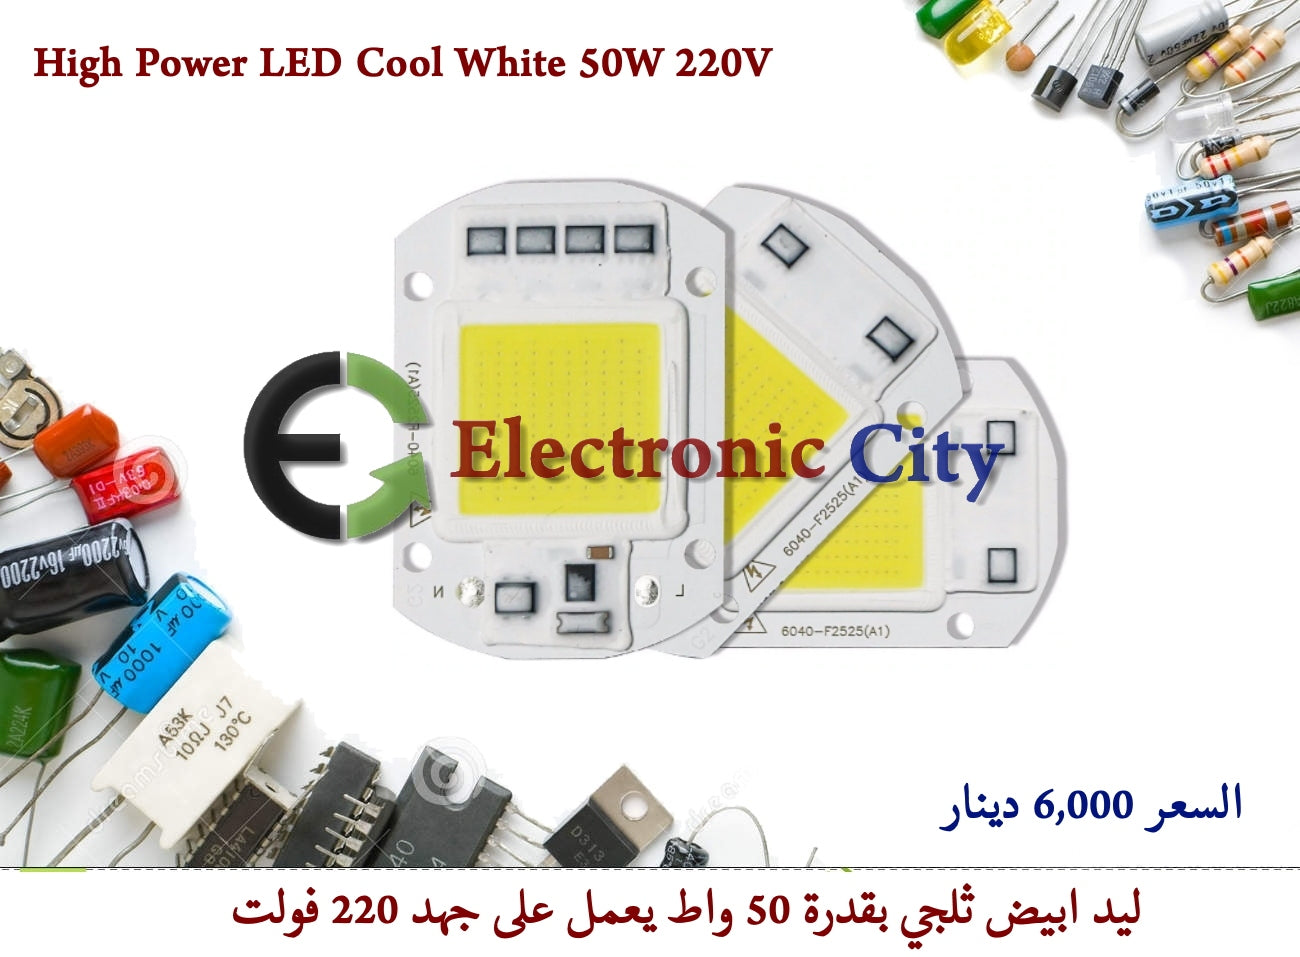 High Power LED Cool White 50W 220V